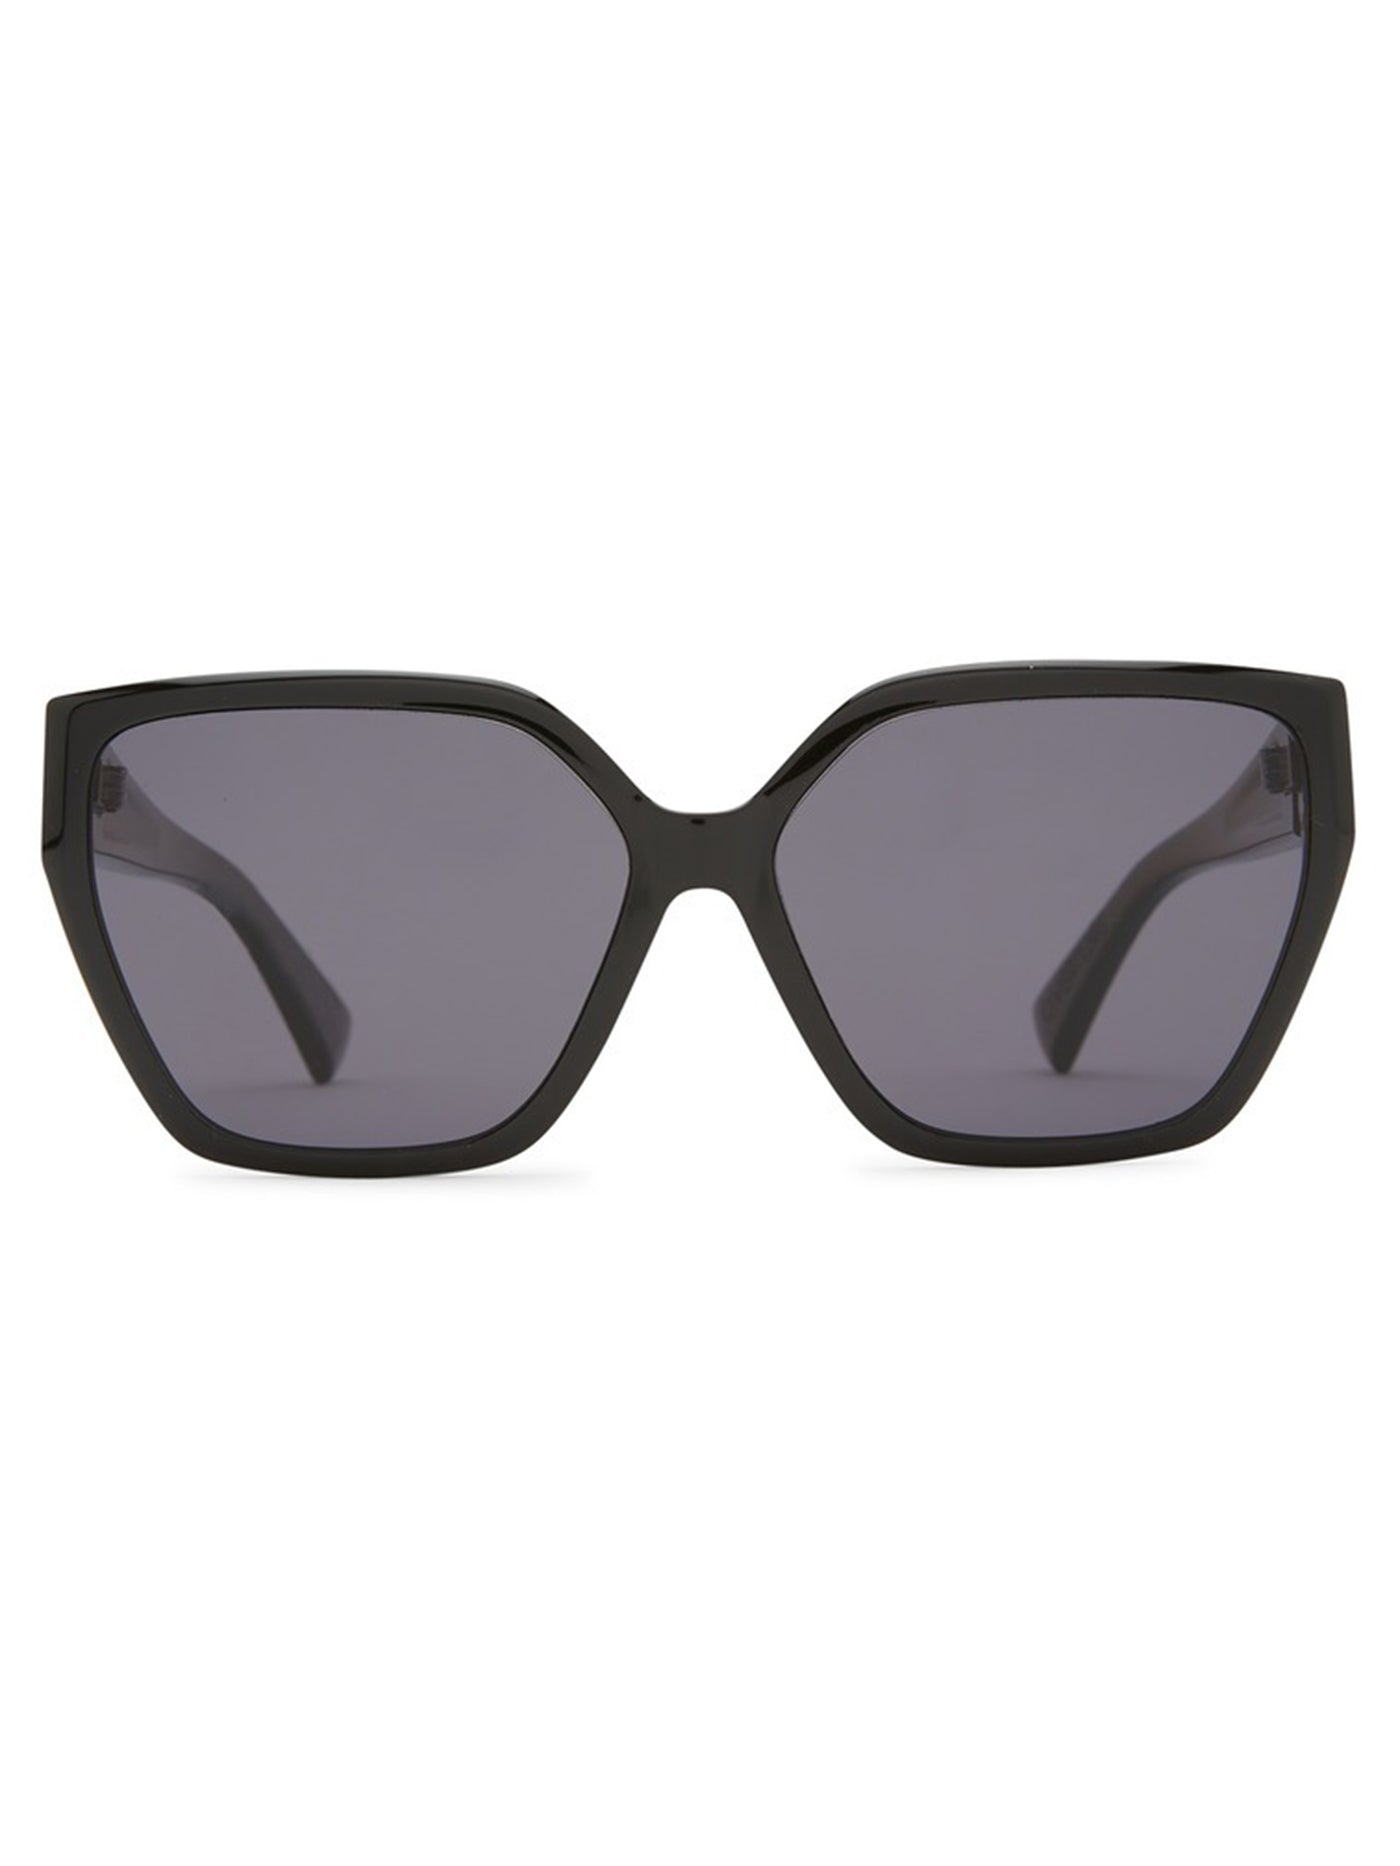 VonZipper Overture Black Sunglasses